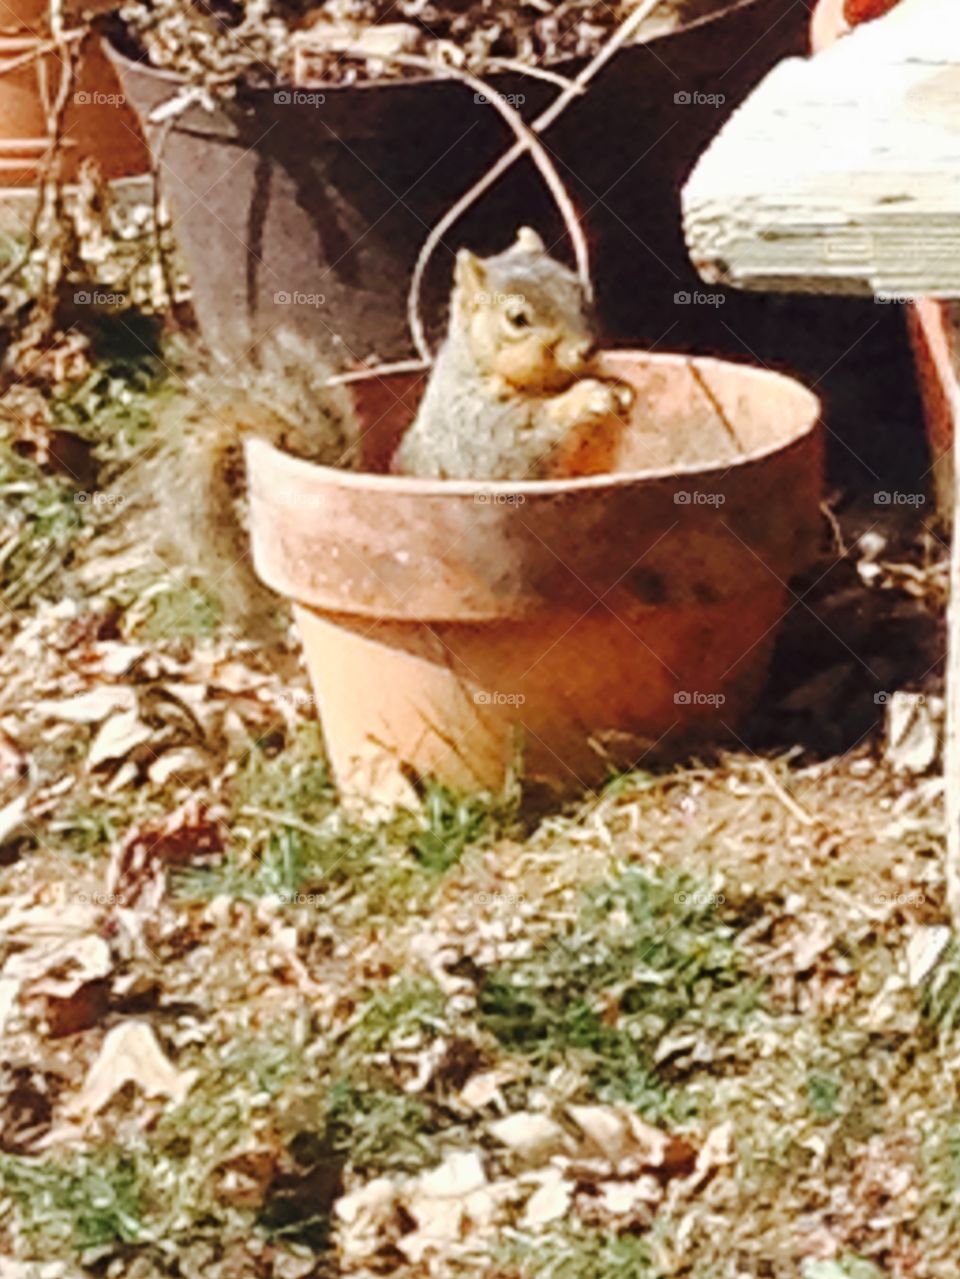 Squirrel in garden pot